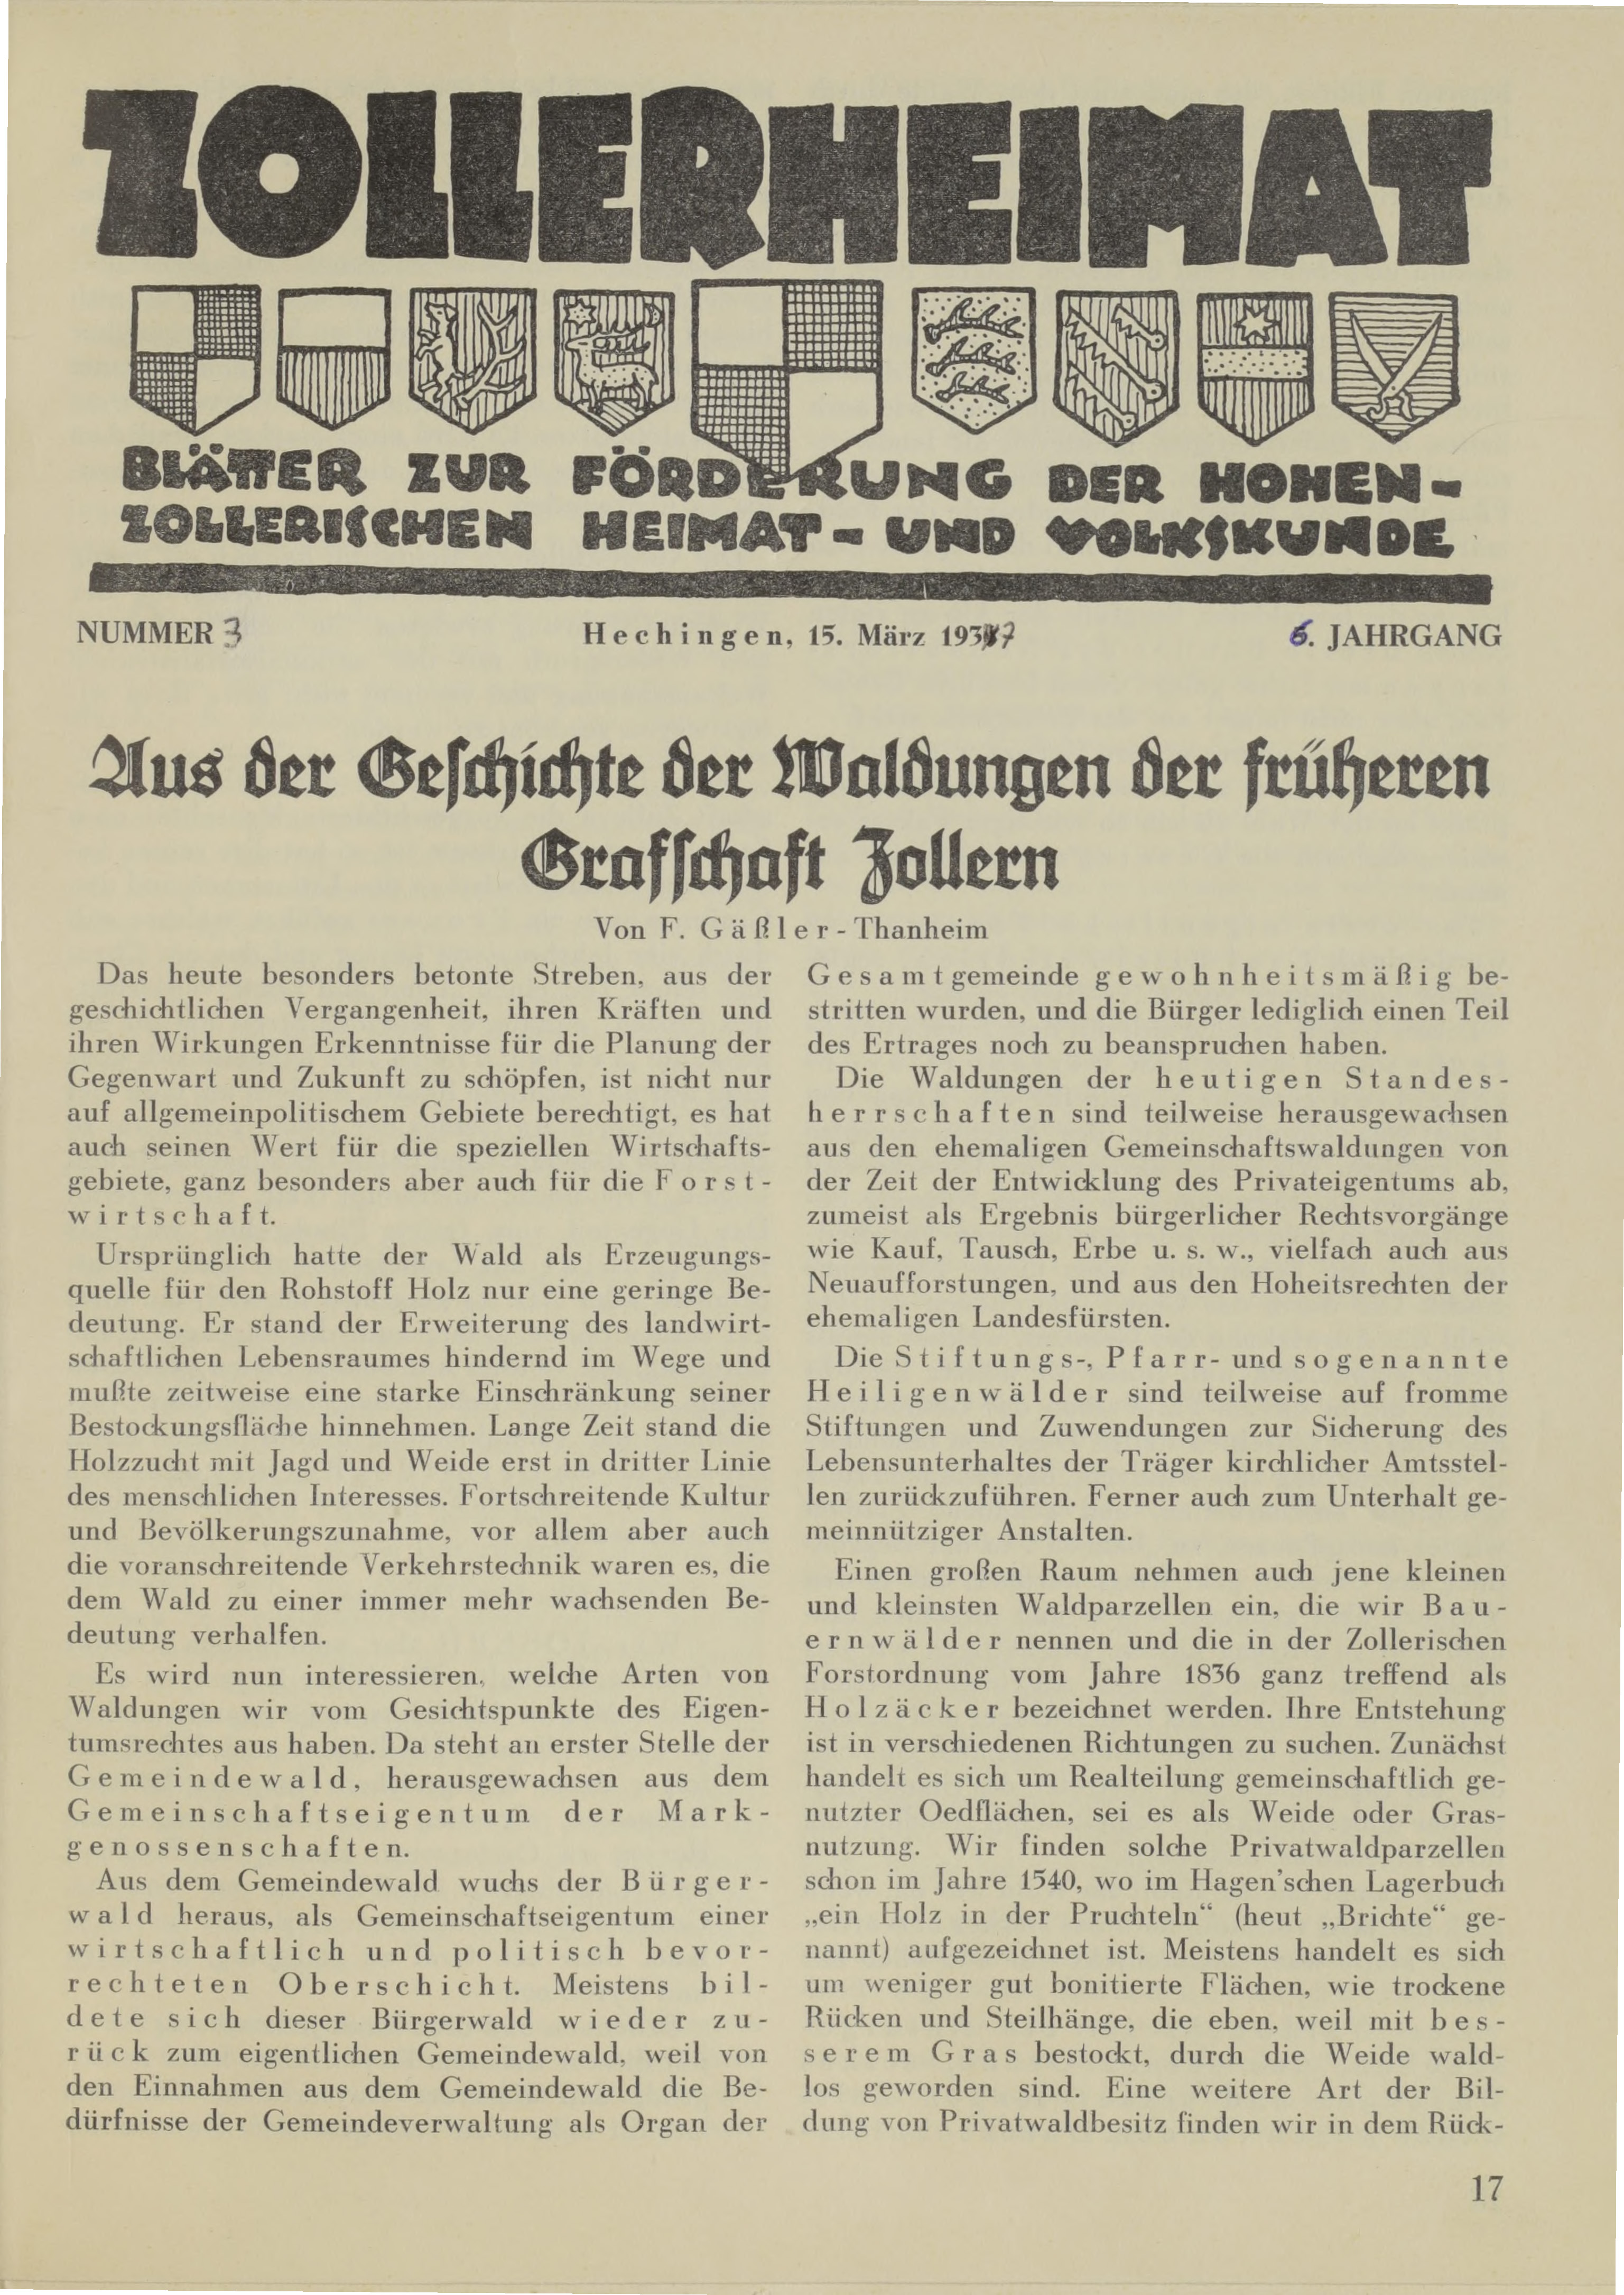                     Ansehen Bd. 6 Nr. 3 (1937): Zollerheimat
                